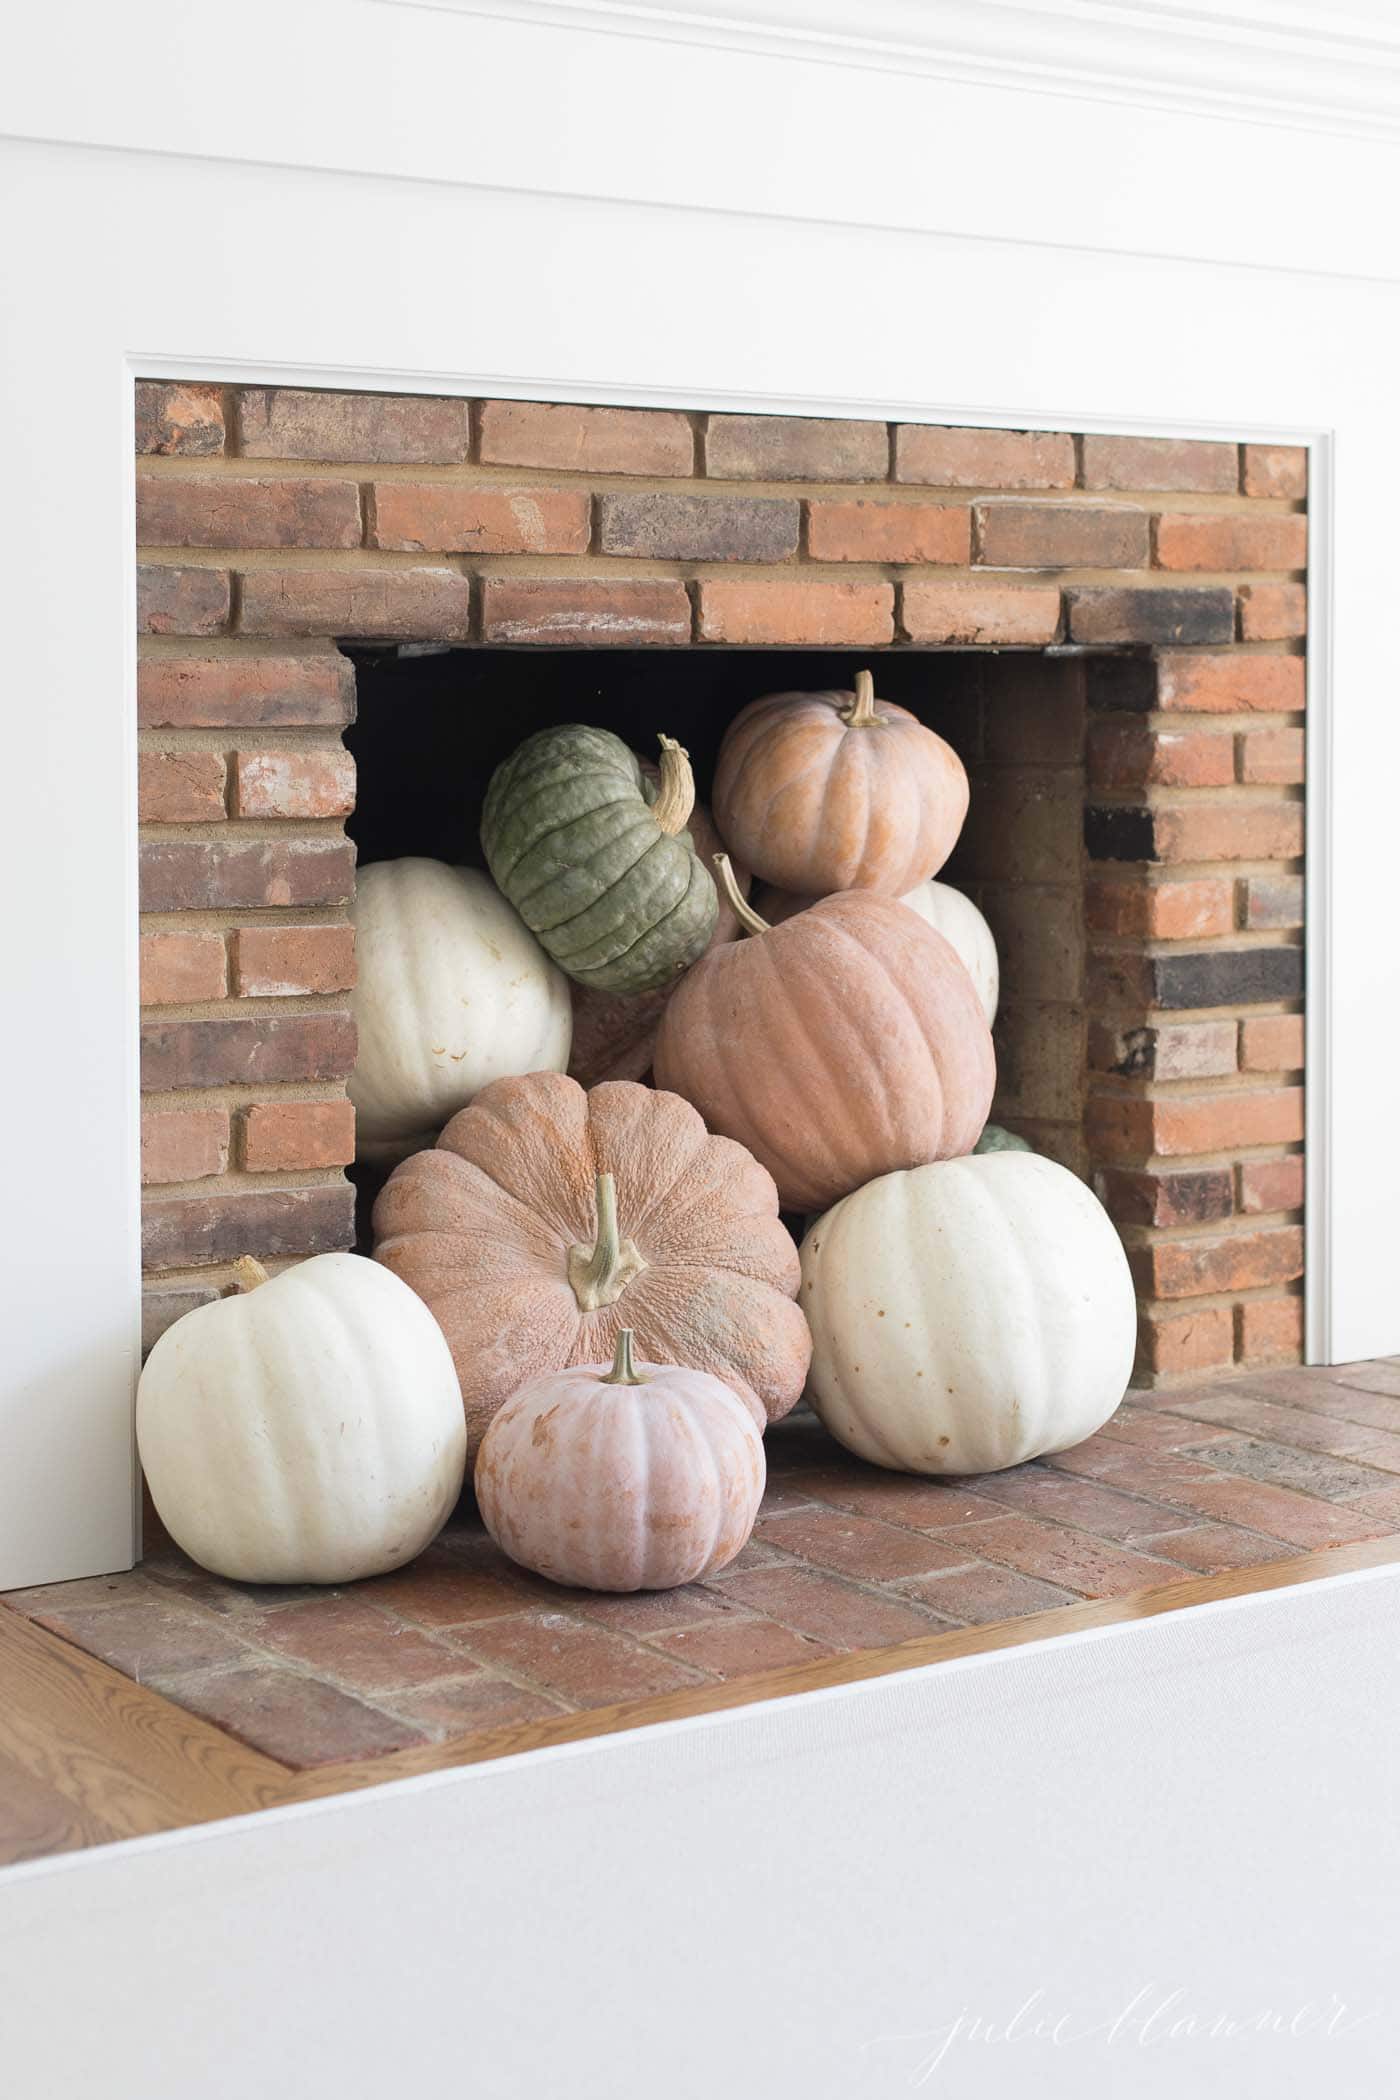 传家宝南瓜壁炉为秋季客厅装饰的想法